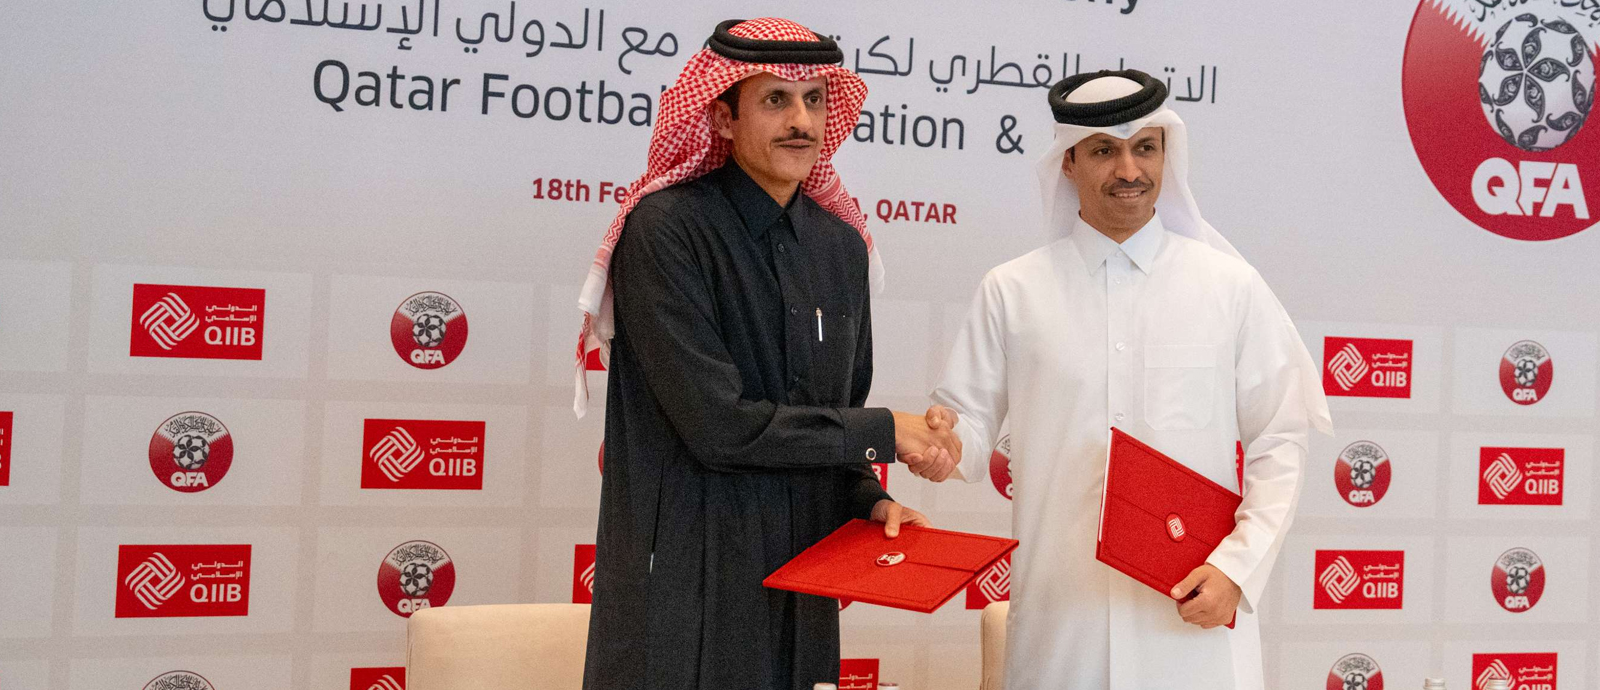 اتحاد كرة القدم وبنك قطر الدولي الإسلامي يوقعان اتفاقية رعاية